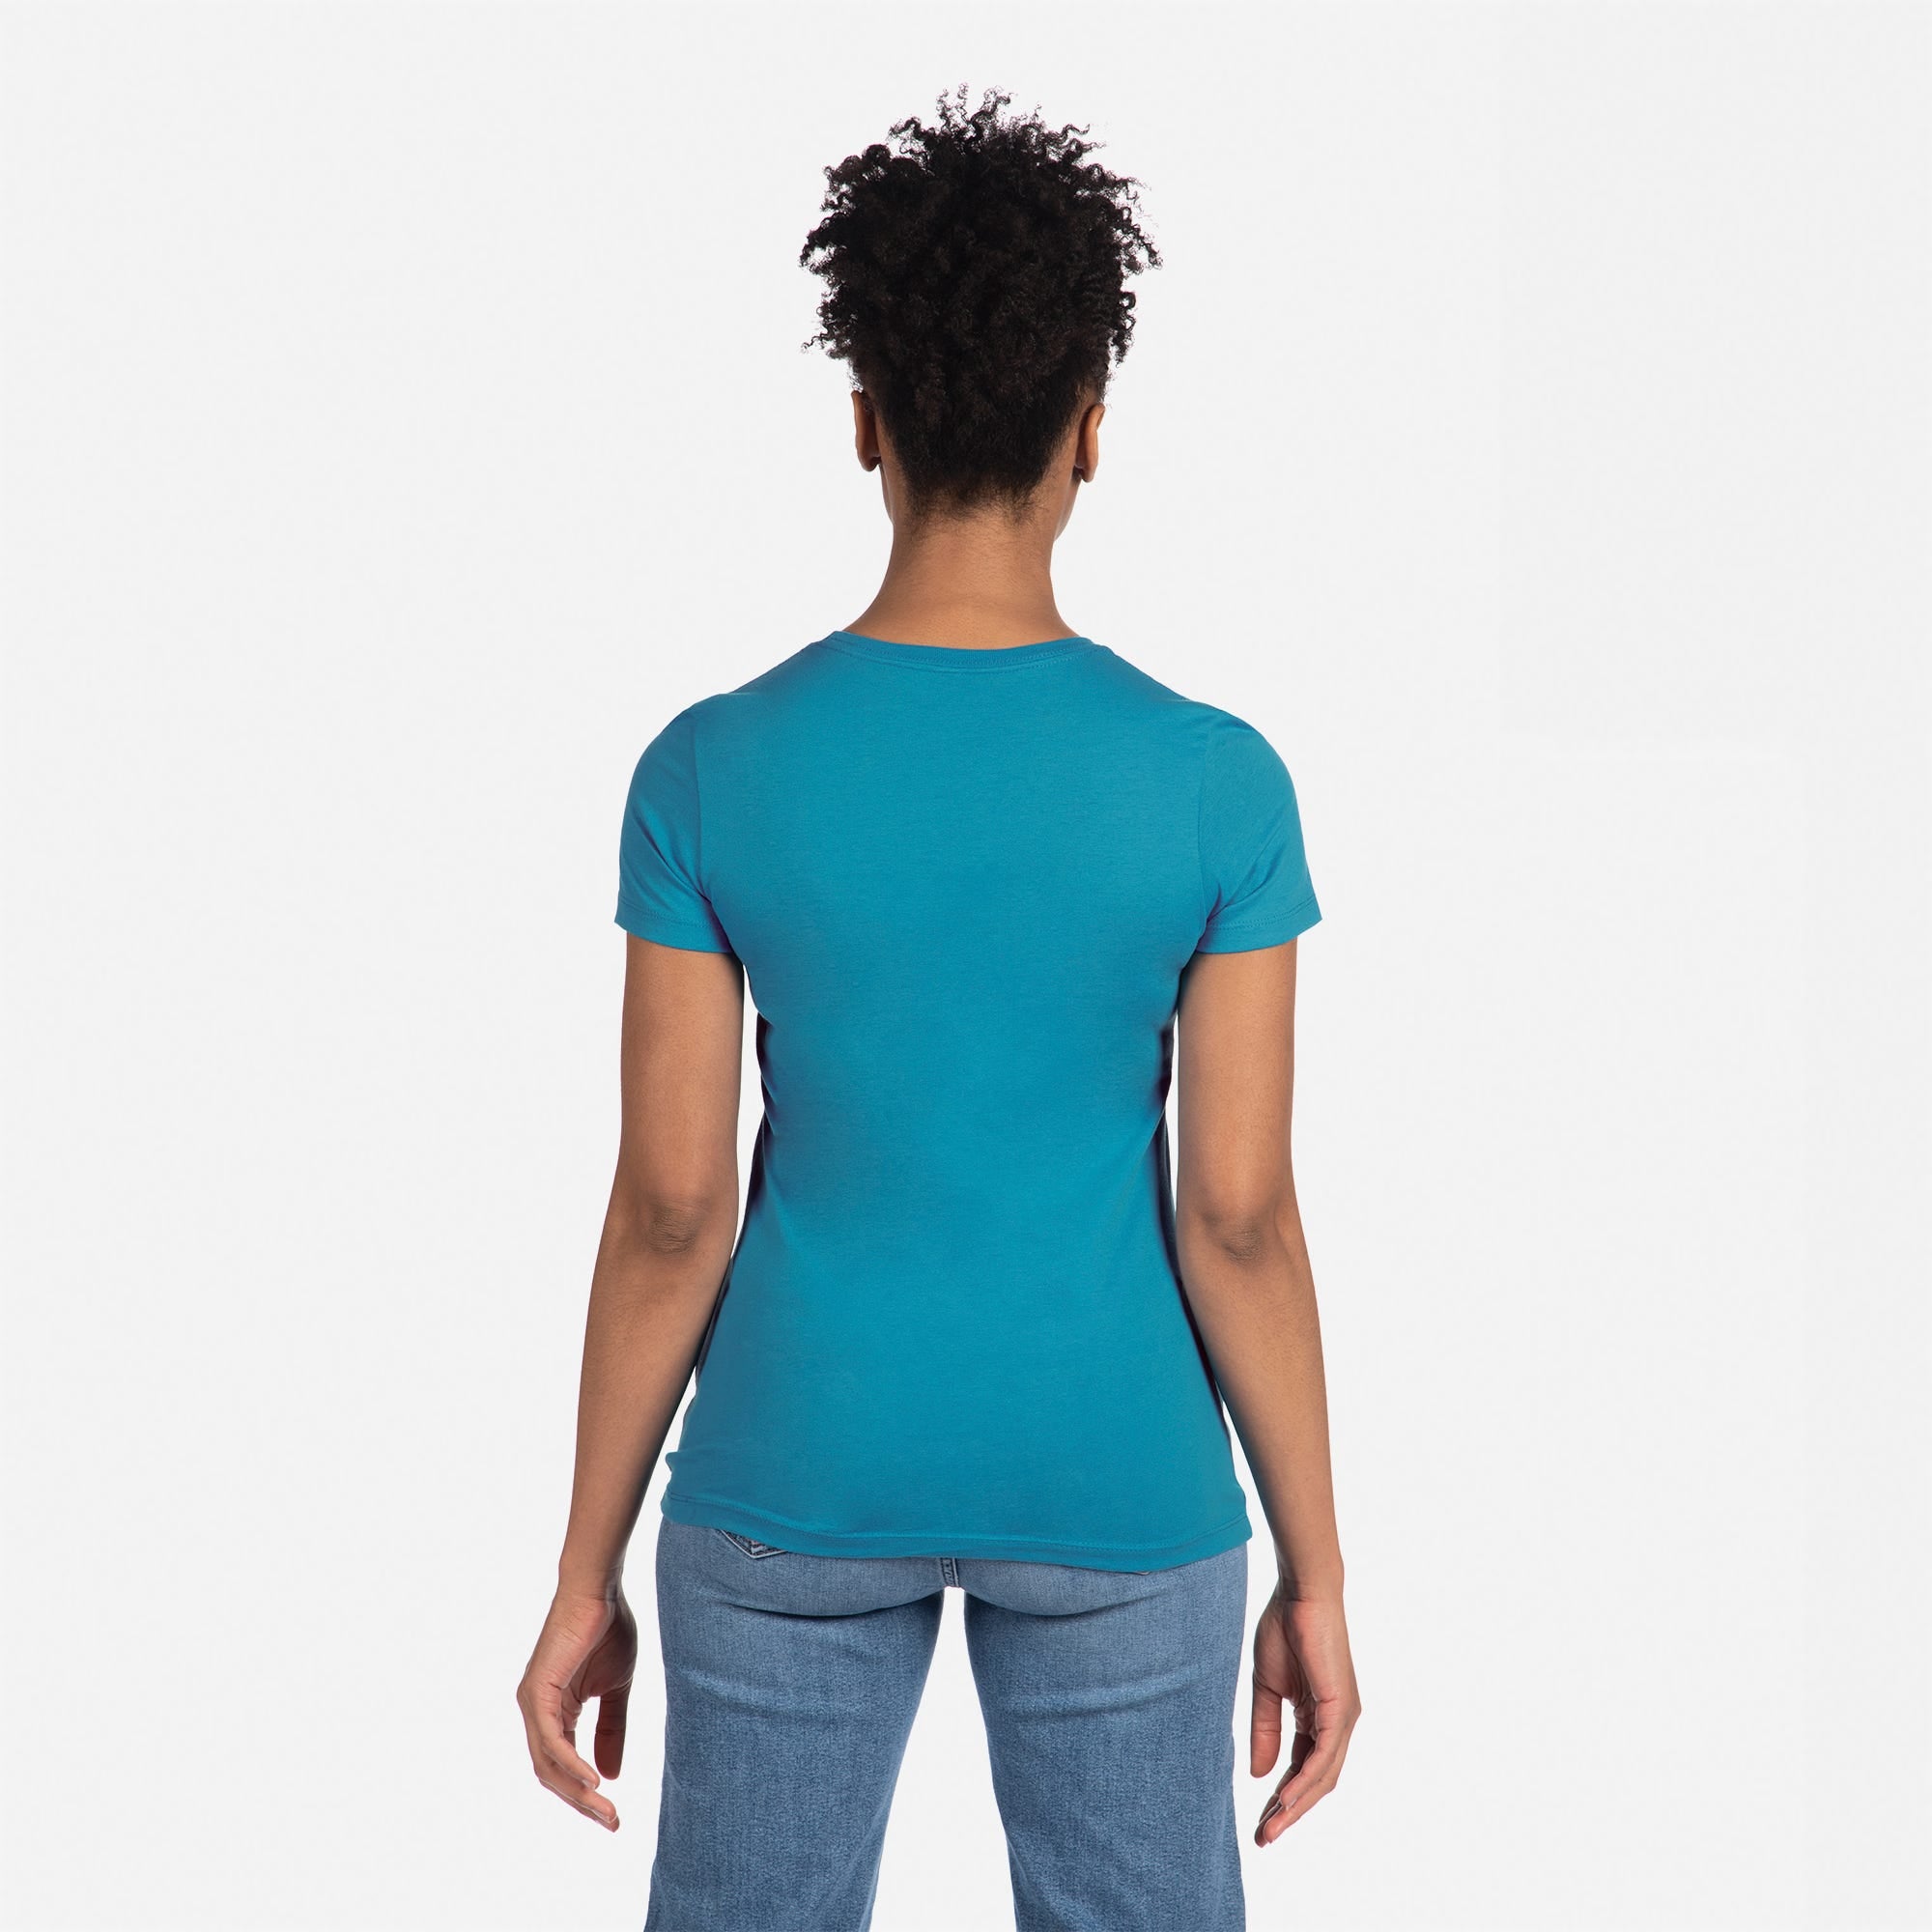 Cotton Boyfriend T-Shirt Turquoise 3900 Next Level Apparel Women's T-Shirt Back View